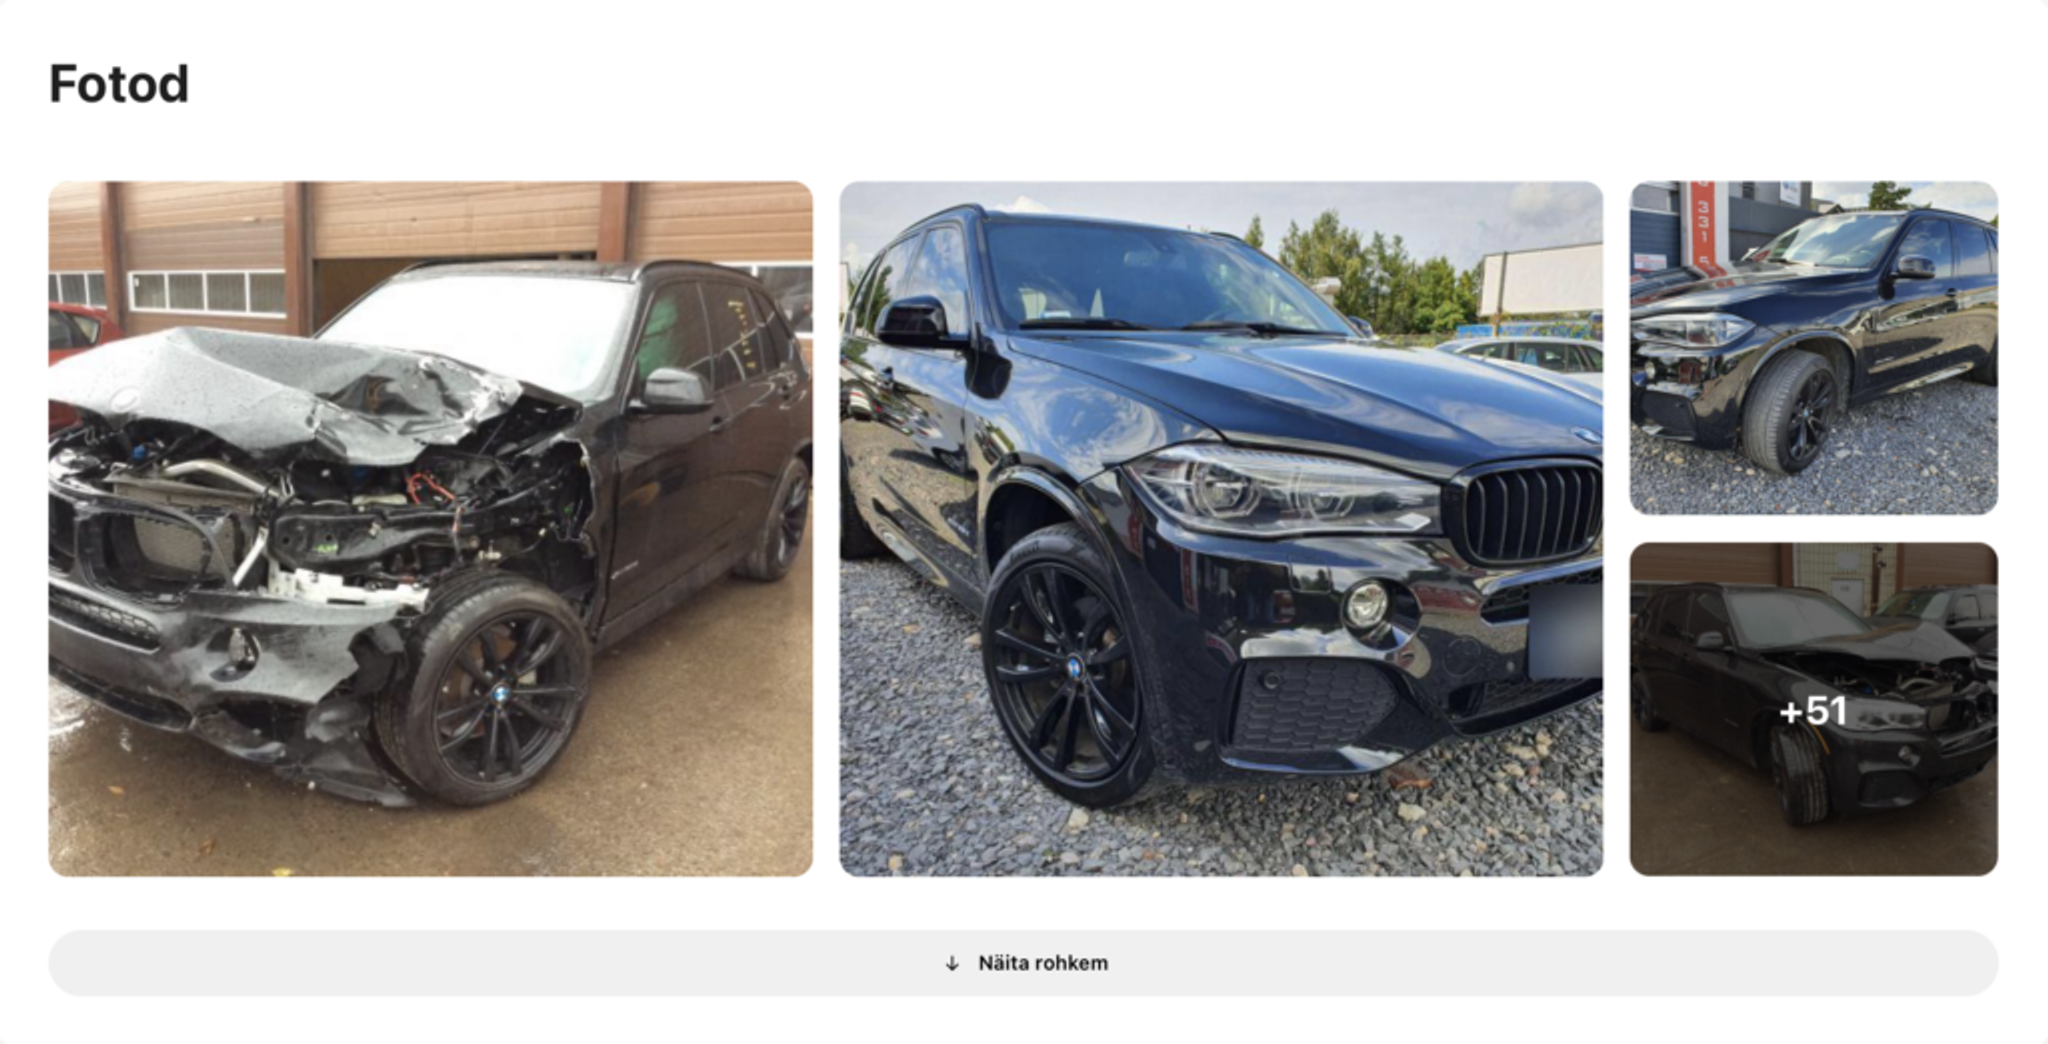 bmw fotod pärast avariid leiti autostVertikaalne, kahjustatud auto, purustatud sõiduk, auto enne ja pärast põhjalikku remonti